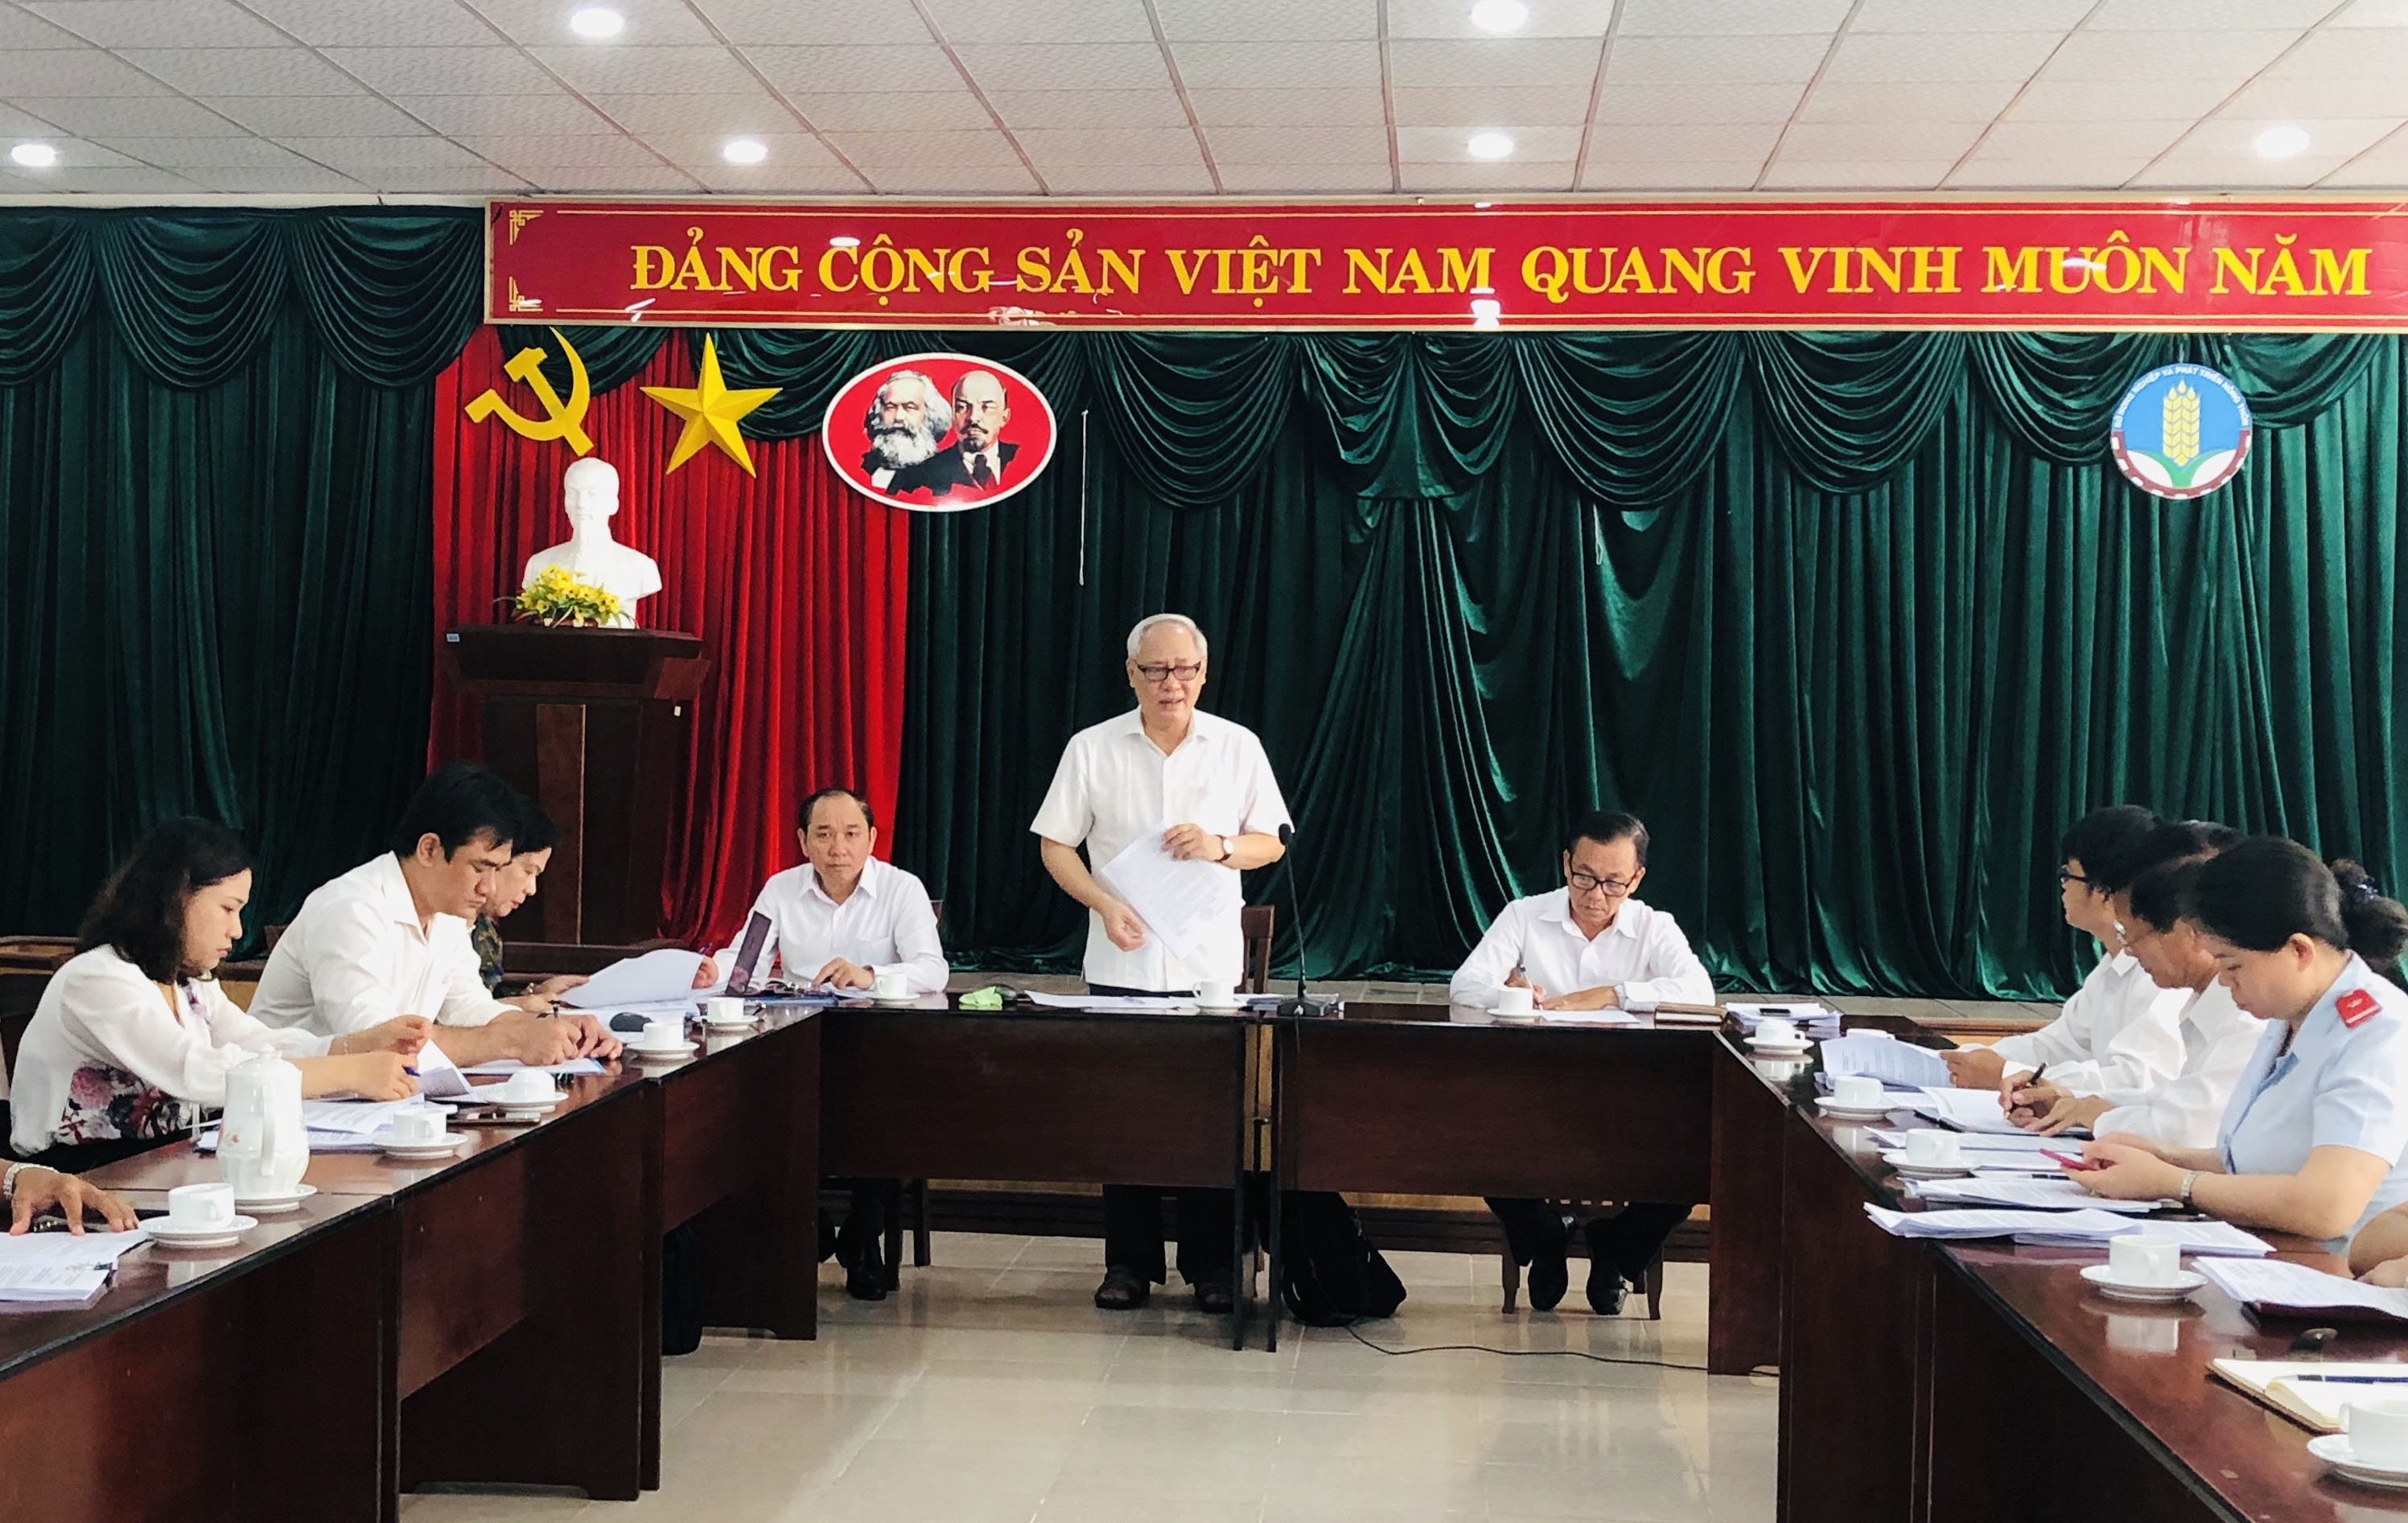 Ông Trần Phúc Chỉnh, Trưởng Ban Kinh tế - Ngân sách HĐND tỉnh phát biểu tại buổi giám sát.